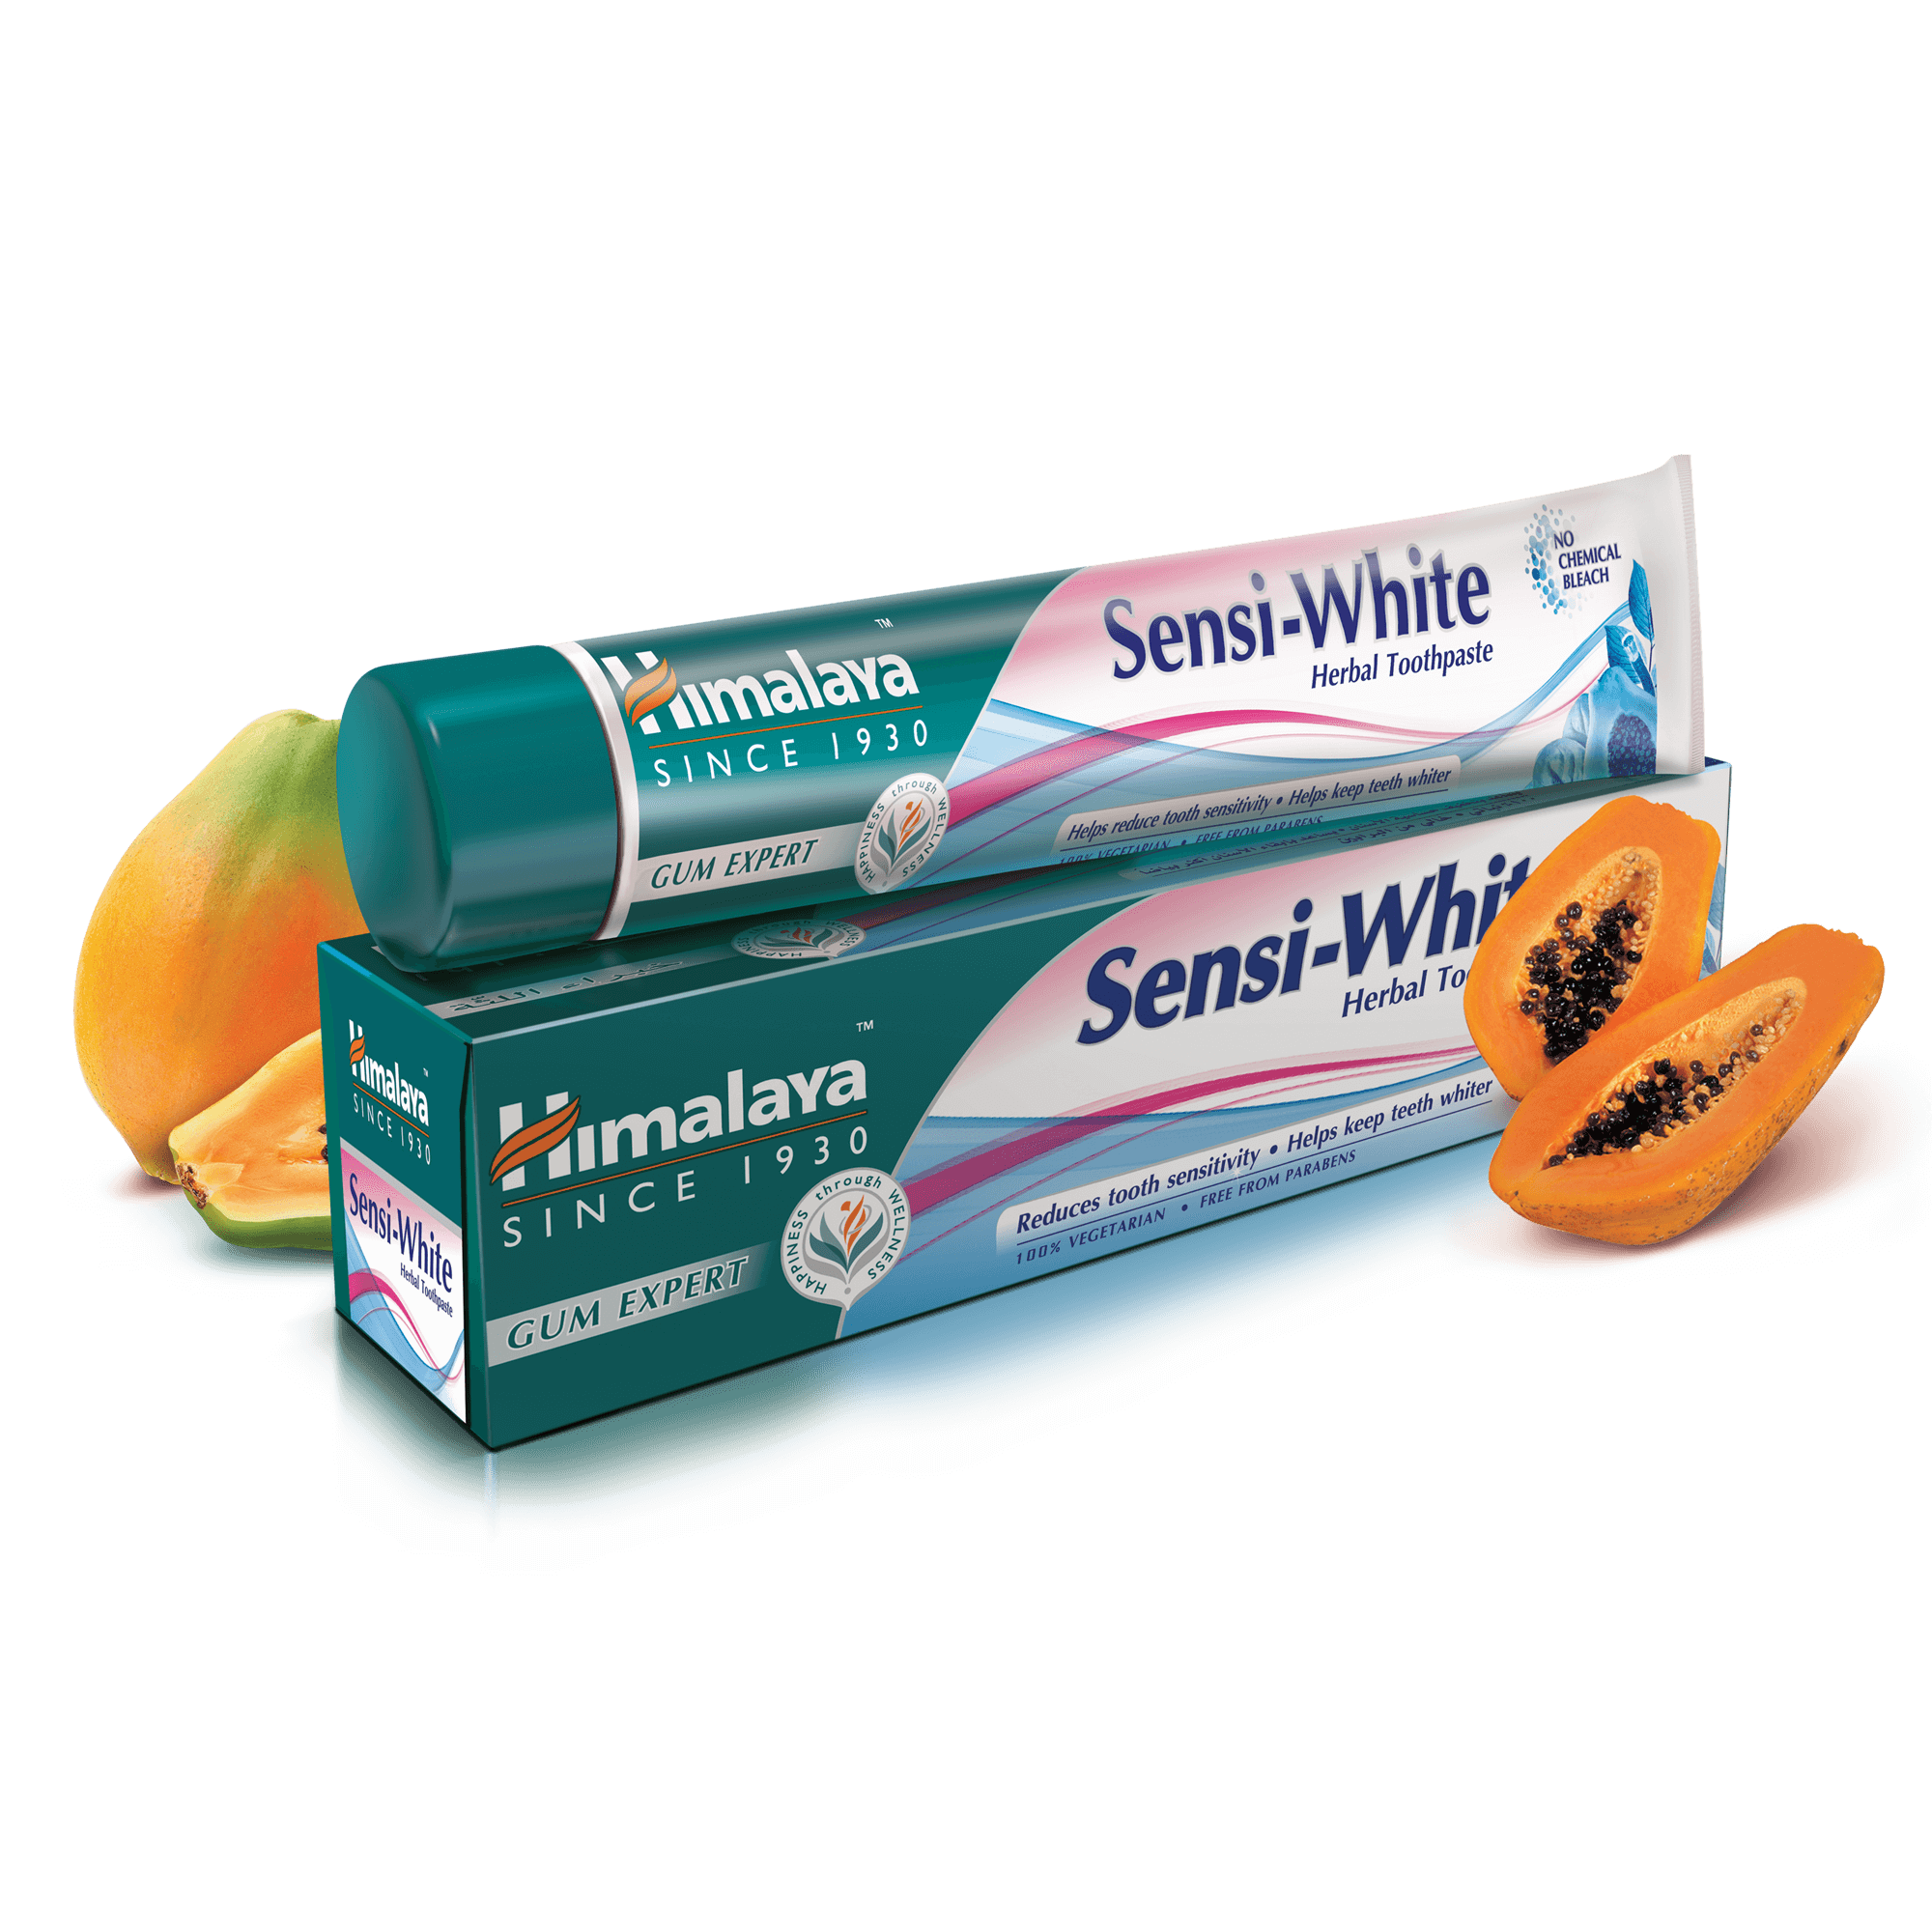 Himalaya Sensi-White Herbal Toothpaste - Reduces Tooth Sensitivity